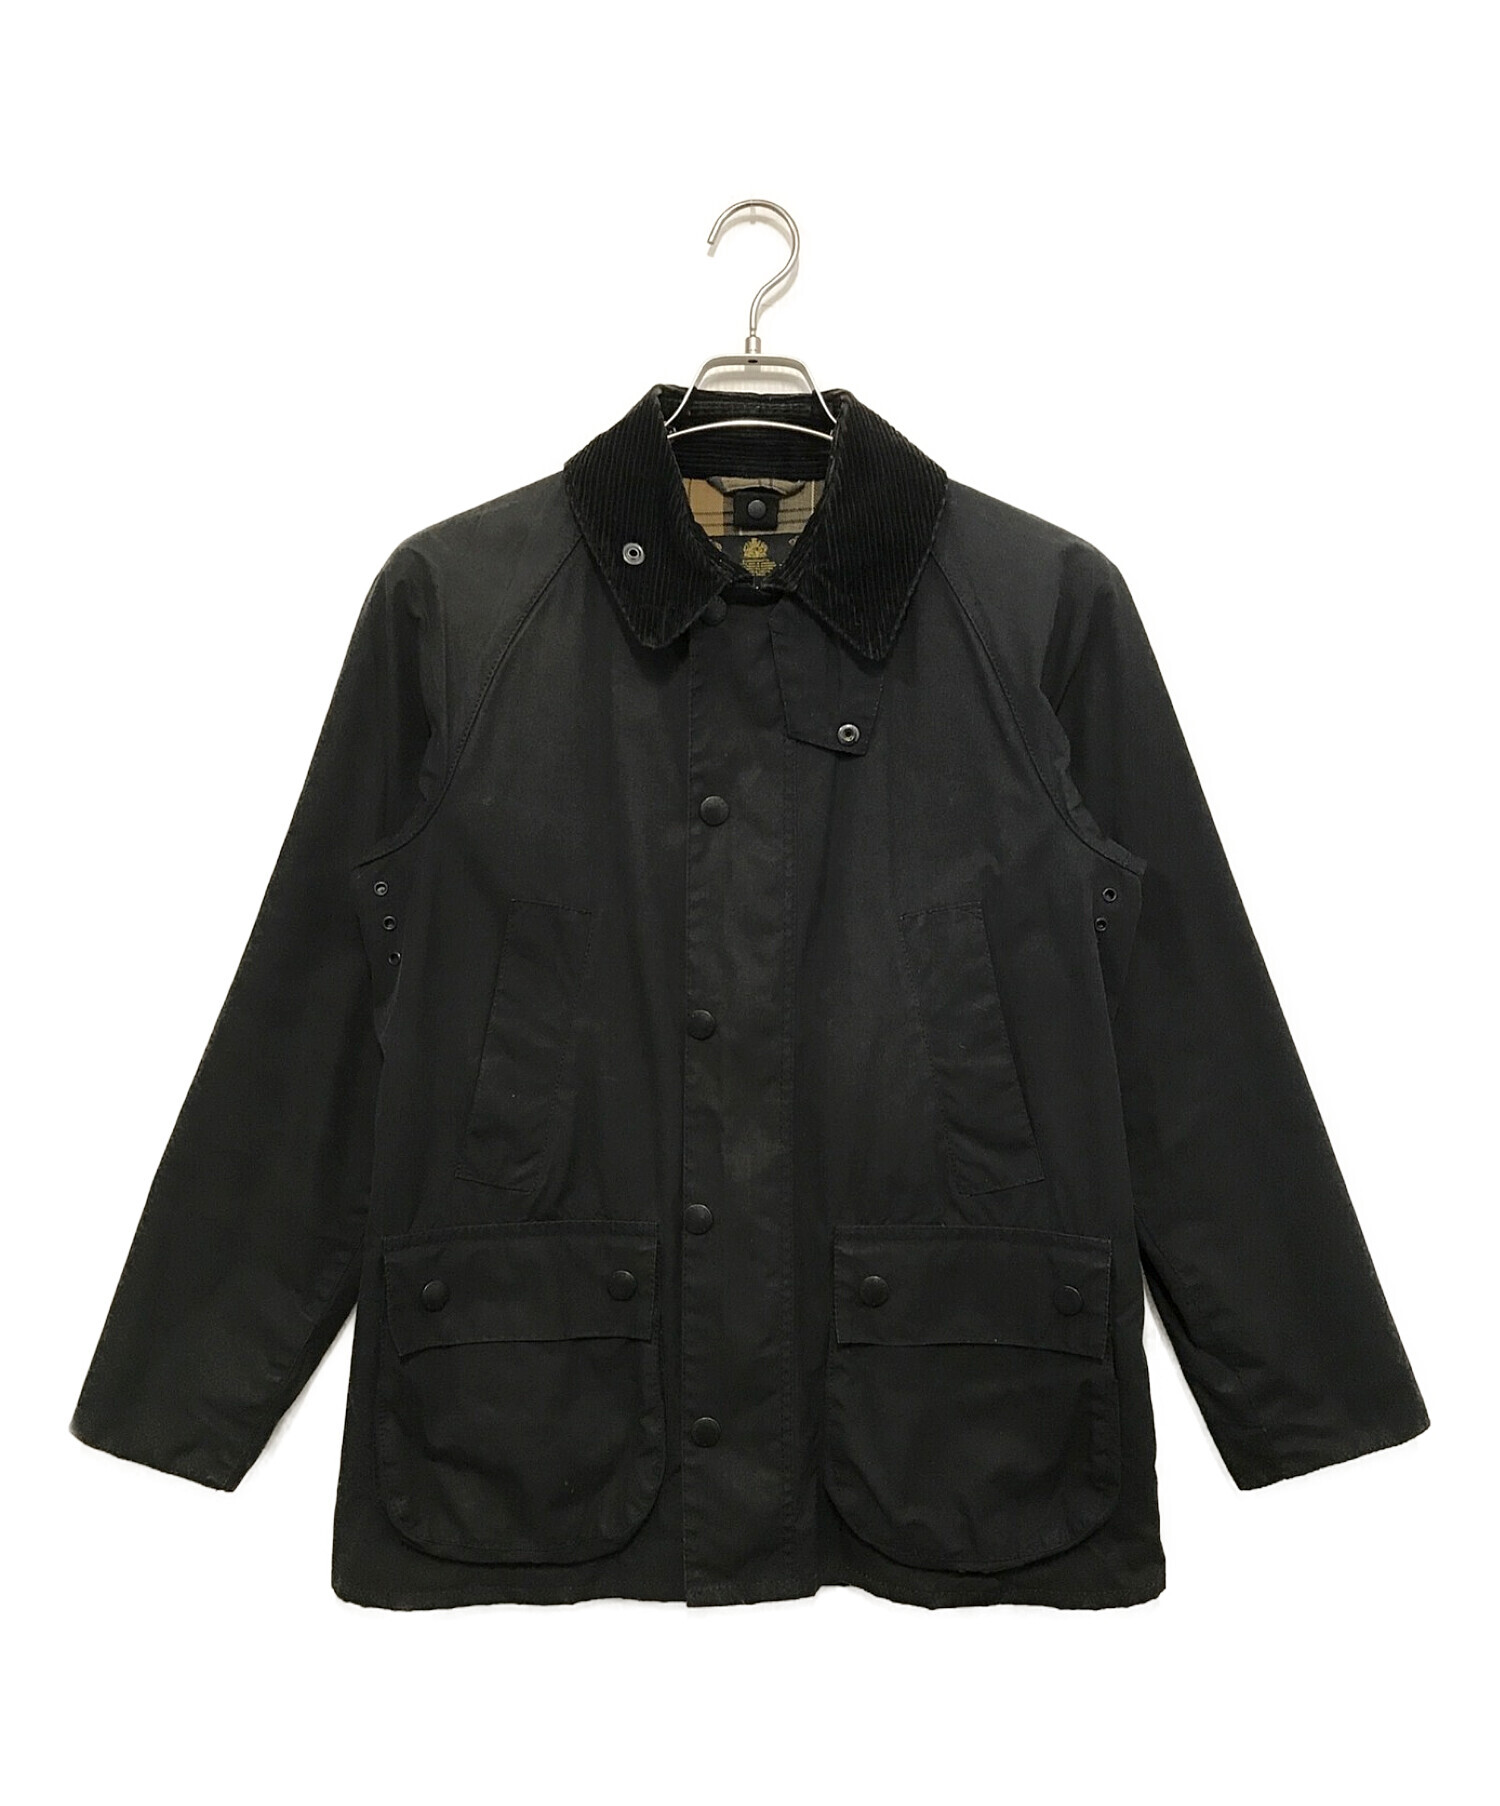 カラーブラックBARBOUR SL BEDALE jacket ビデイル ジャケット 黒 38